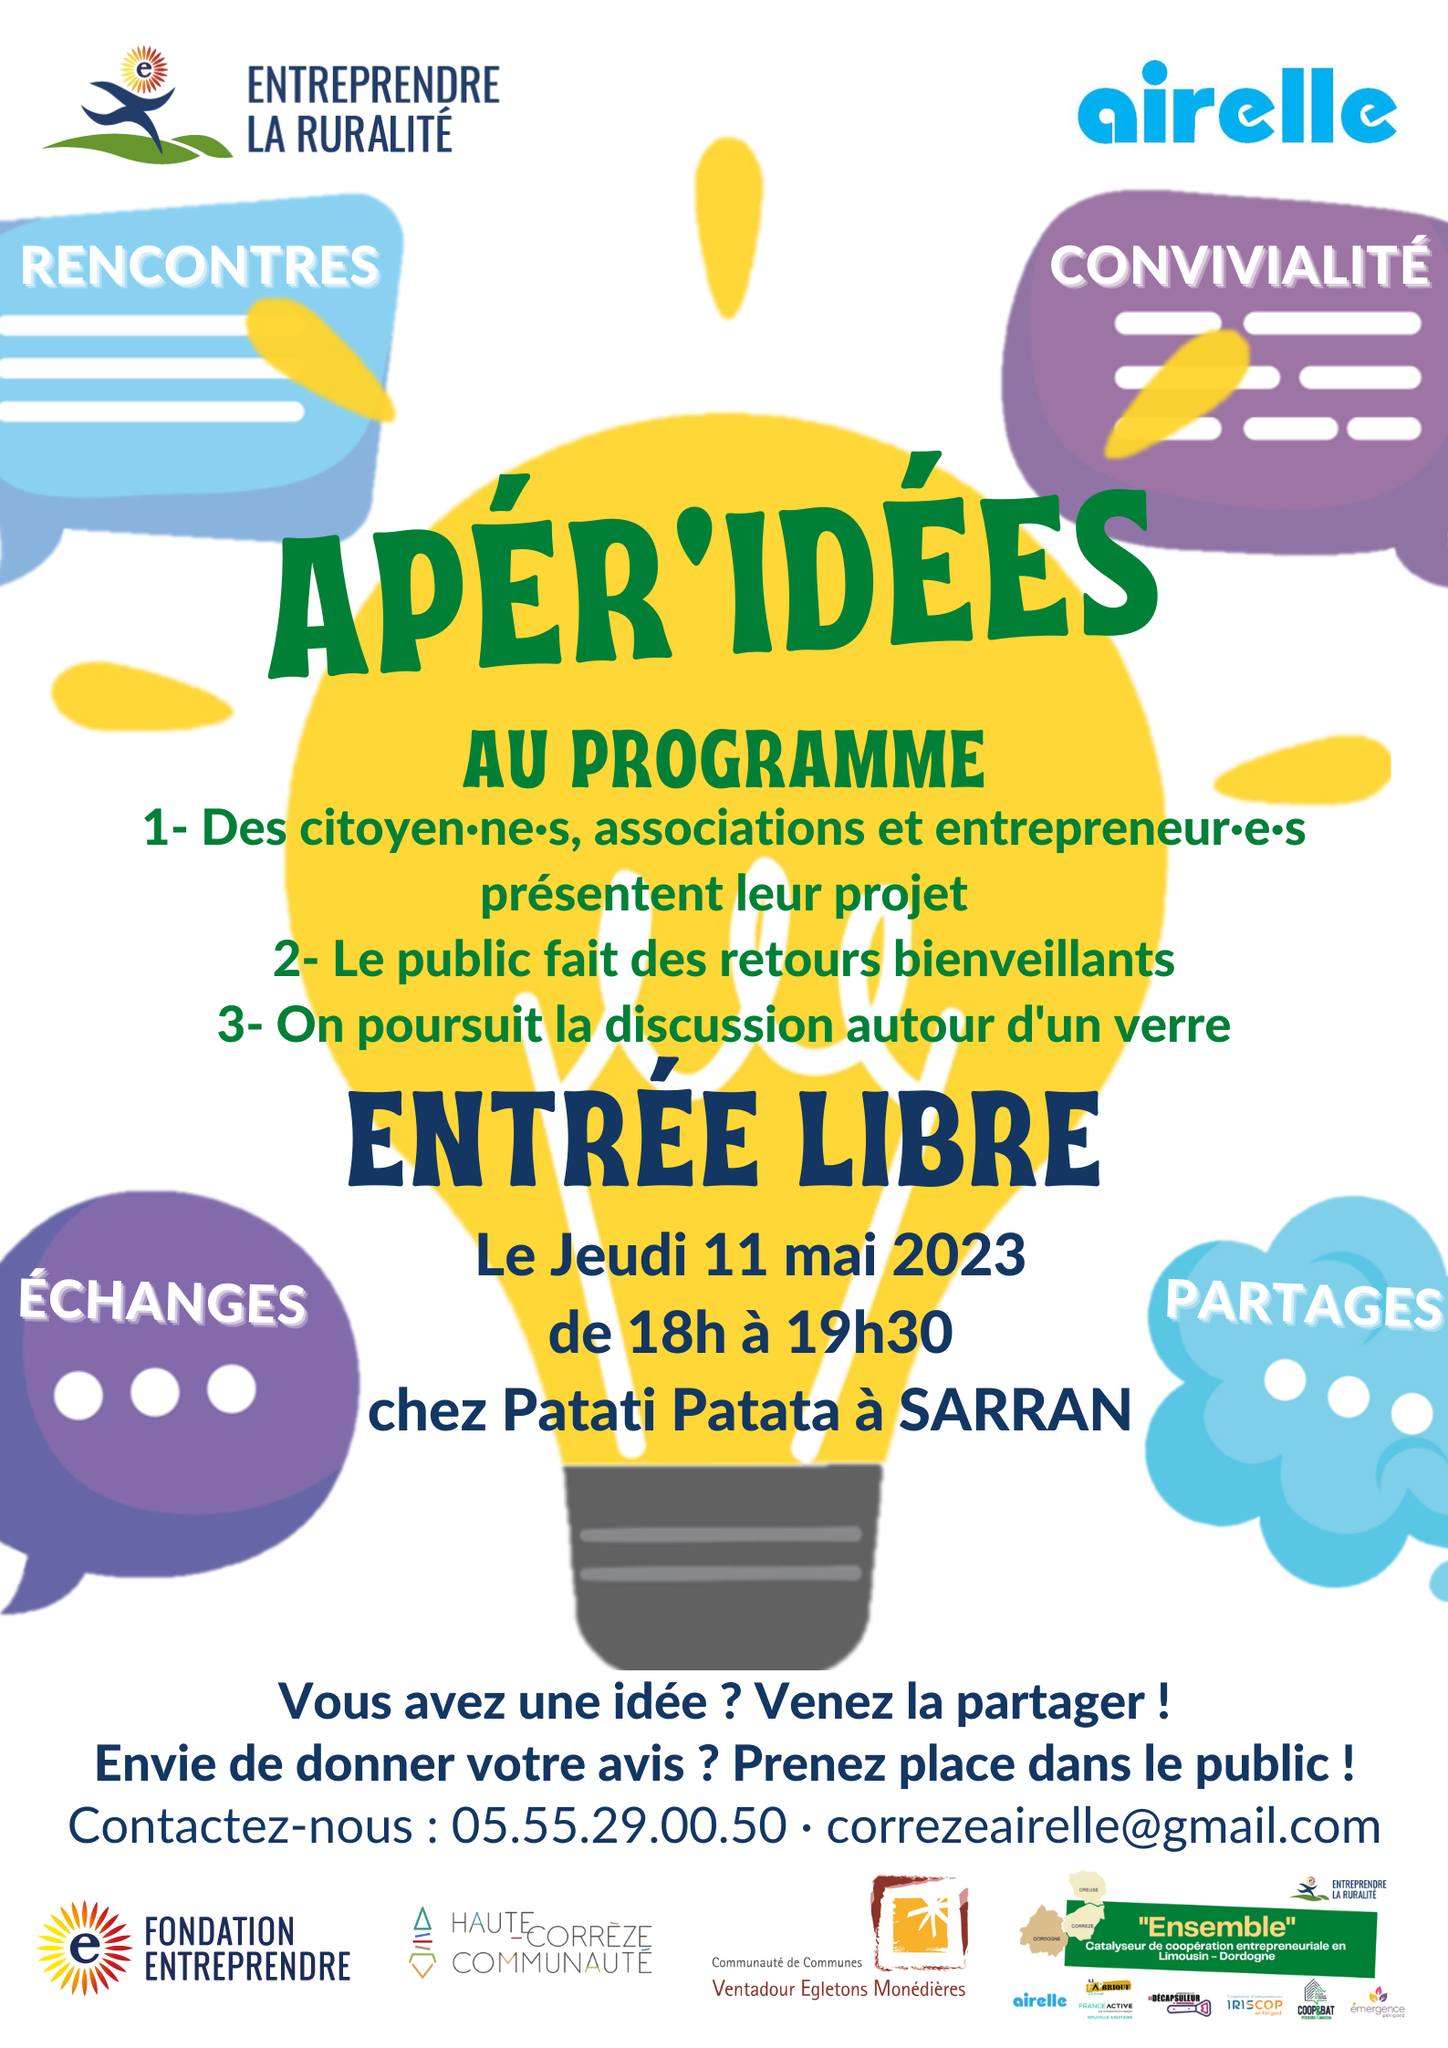 Apéro idées Airelle Corrèze 11 Mai 2023 | Flyer de l'événement